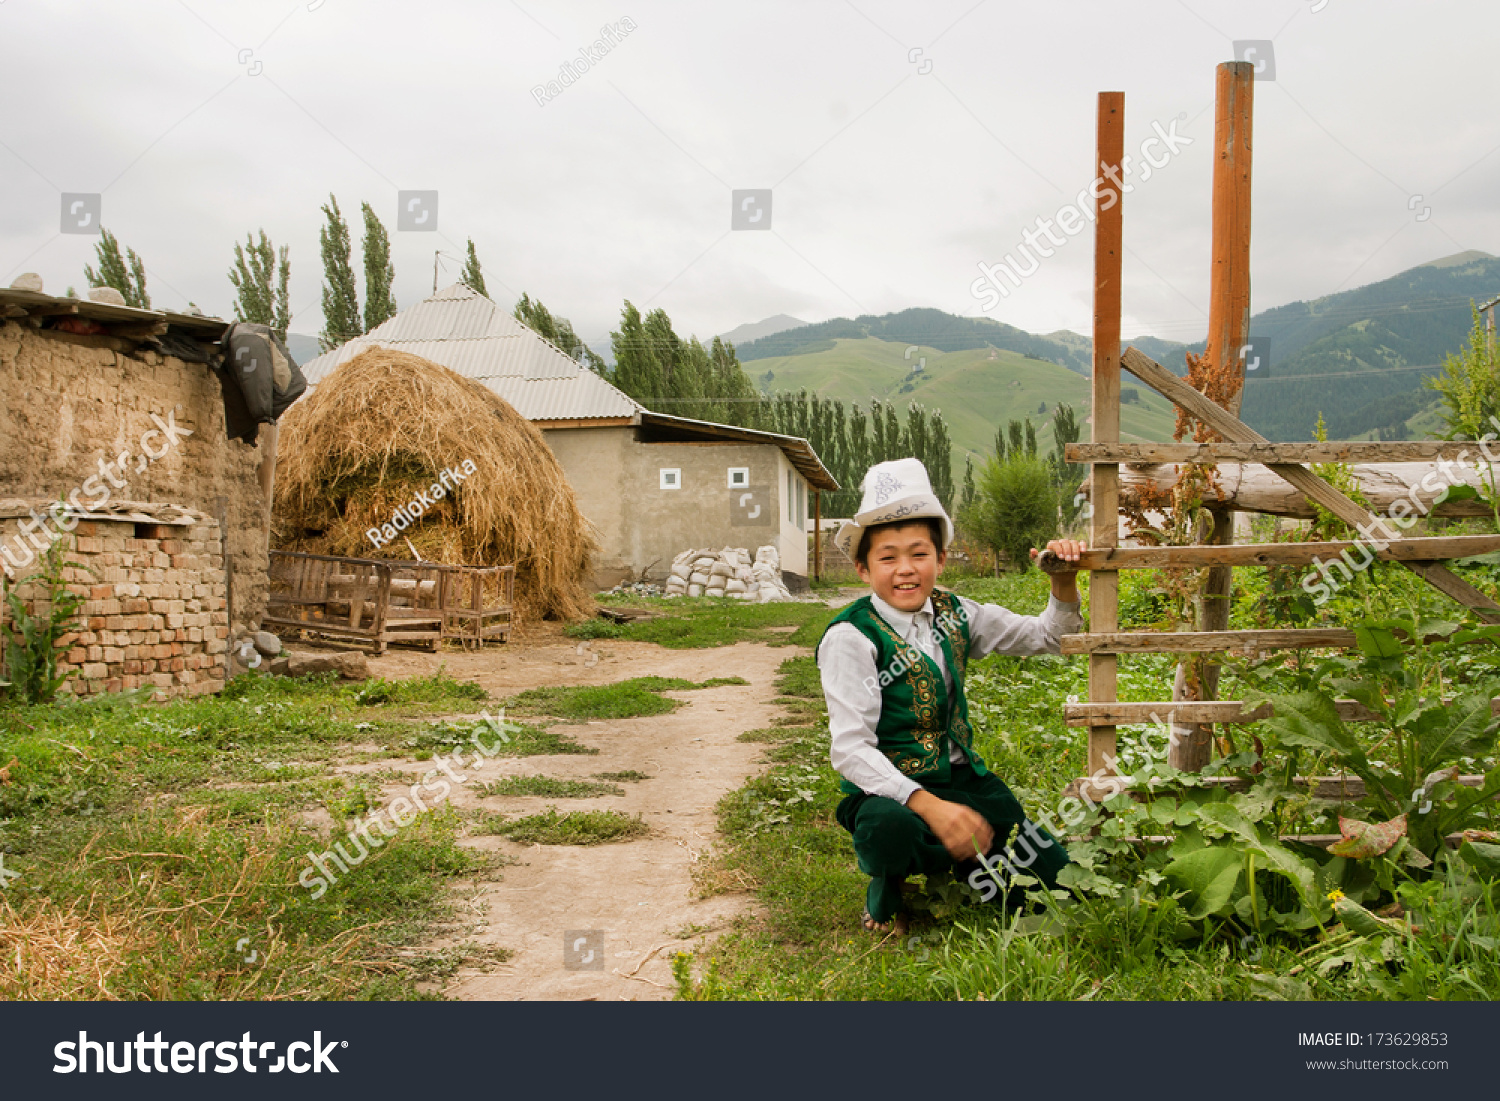 KEMIN,吉尔吉斯斯坦- 8月2日:孩子在传统吉尔